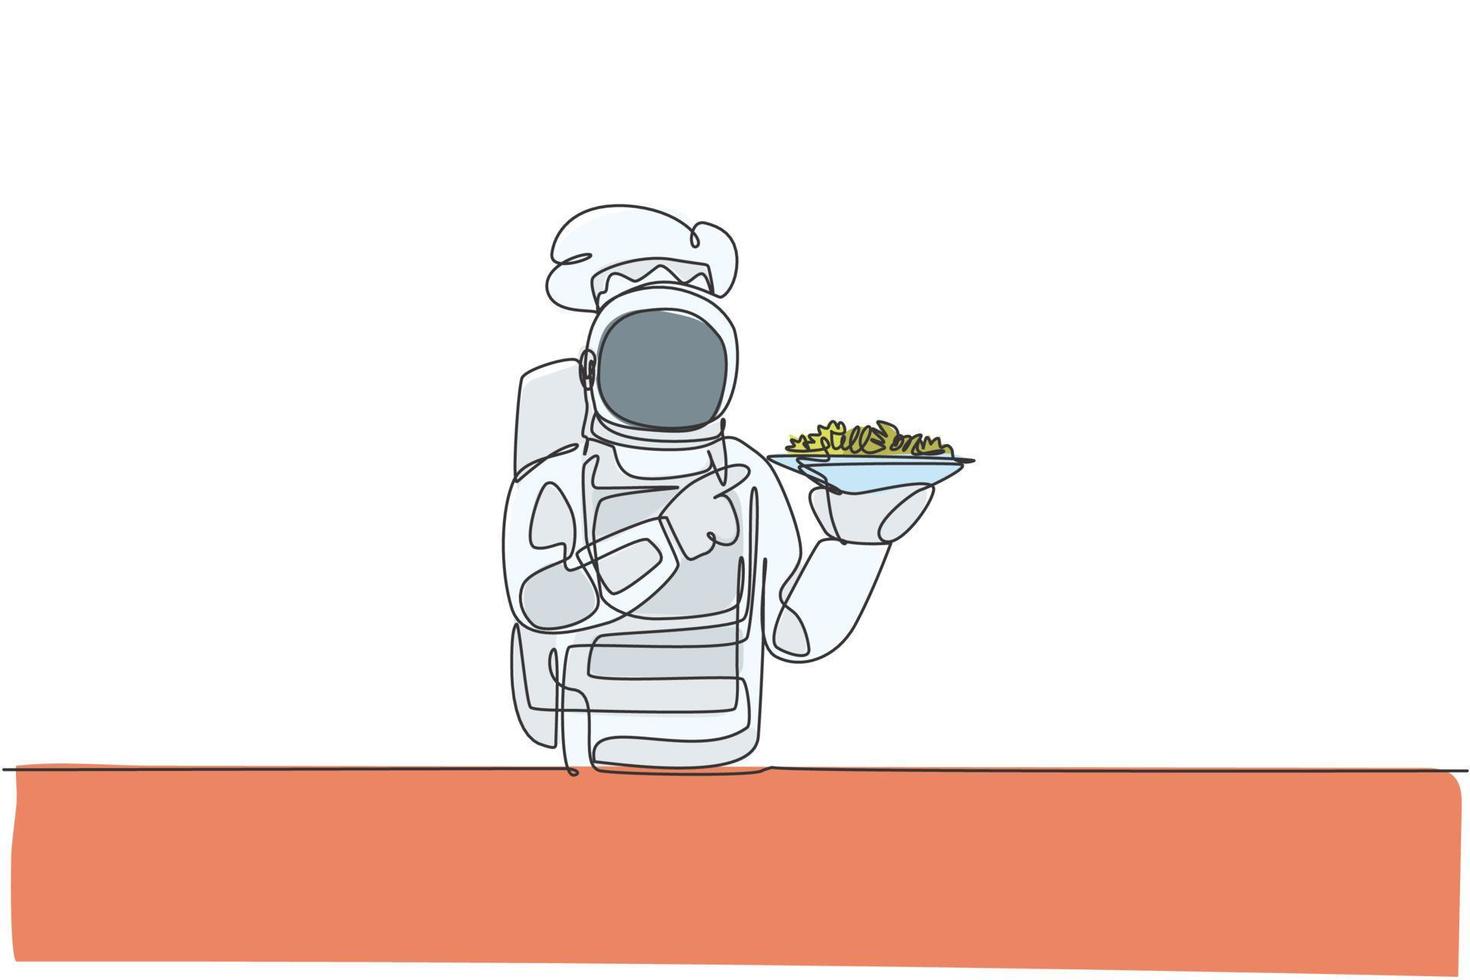 en enda radritning av ung astronautkock som serverar hälsosam salladsmat för caféresto vektorgrafisk illustration. läcker rymd galax maträtt koncept. modern kontinuerlig linje rita design vektor